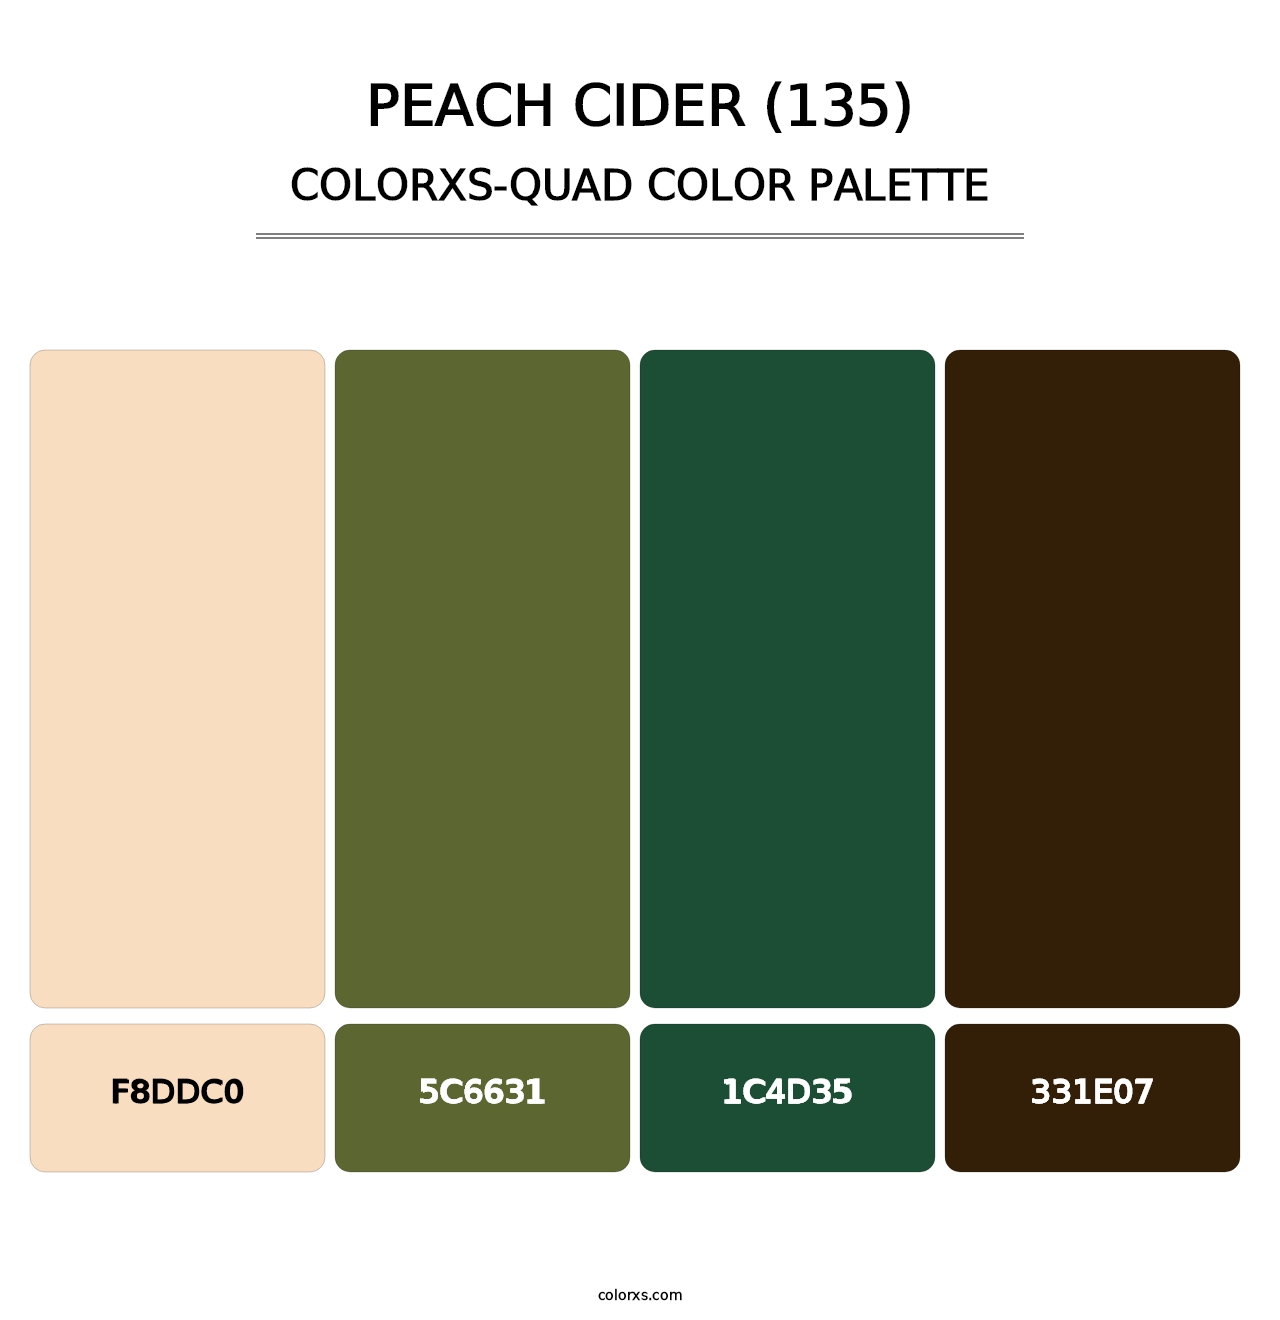 Peach Cider (135) - Colorxs Quad Palette